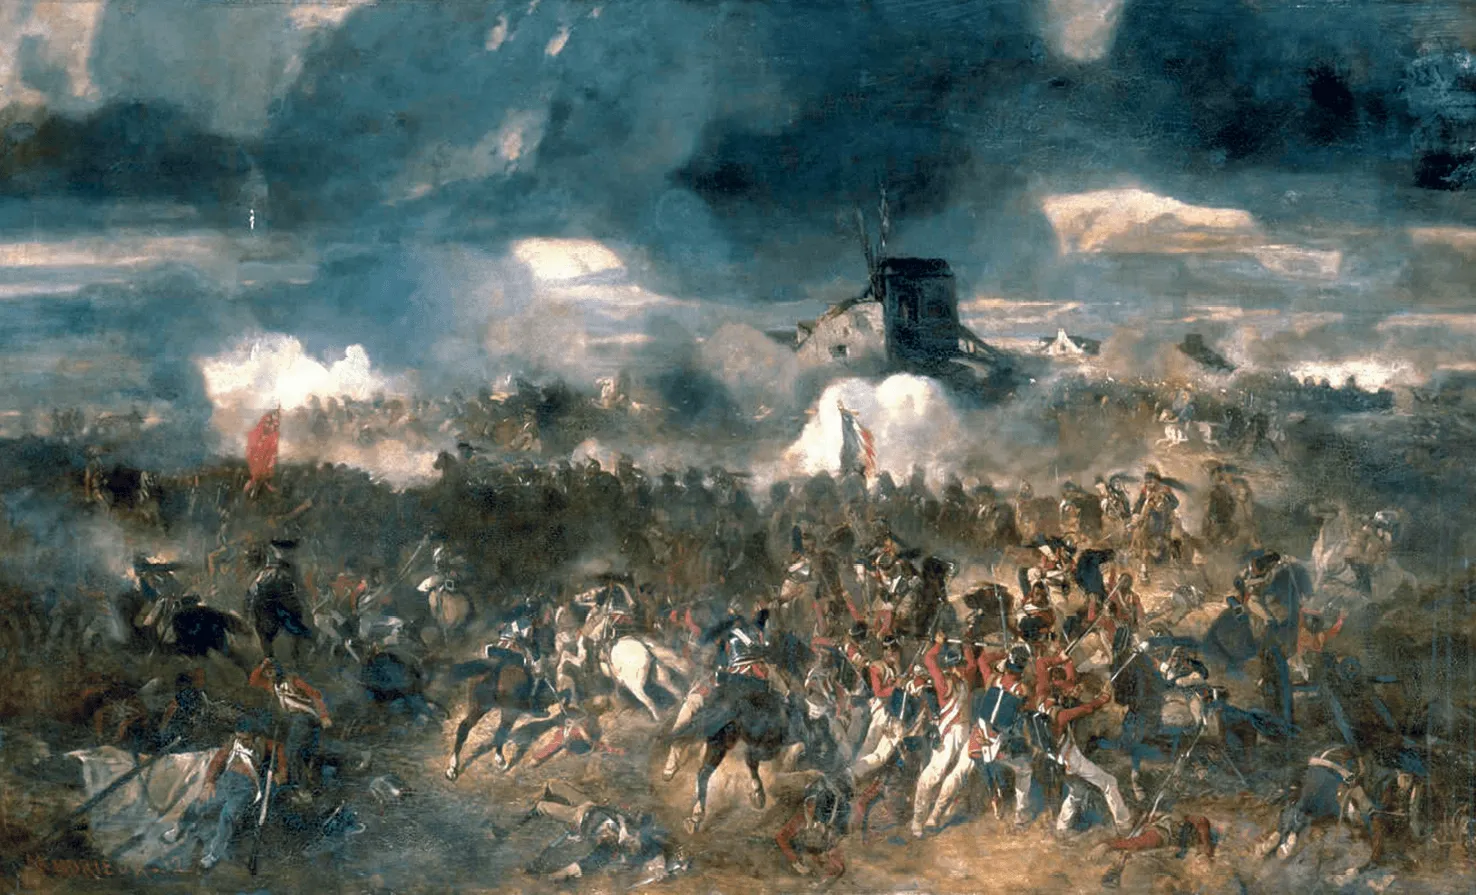   1815 - Bataille de Waterloo